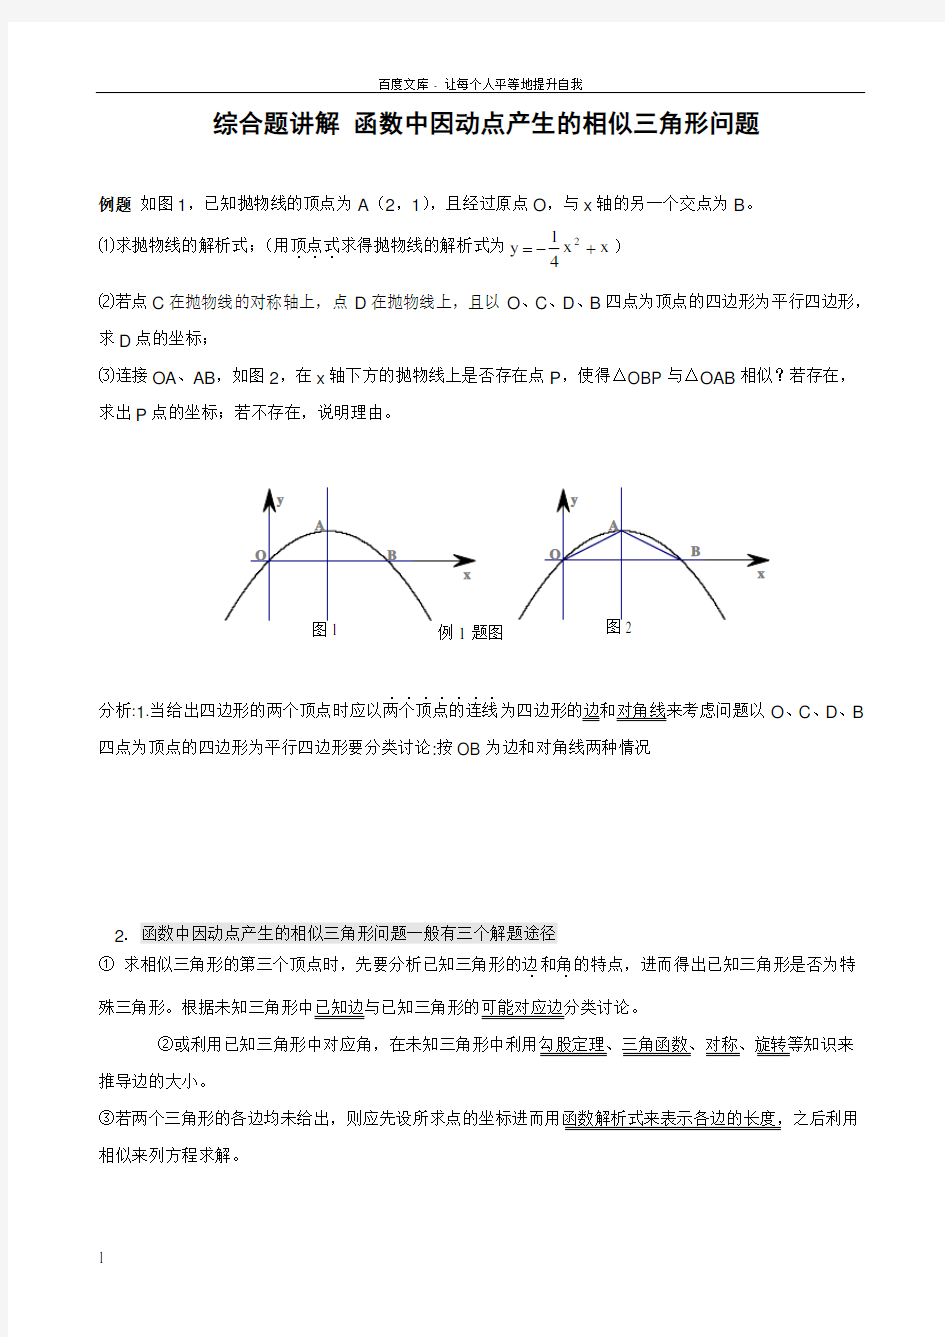 二次函数与相似三角形问题含答案(供参考)